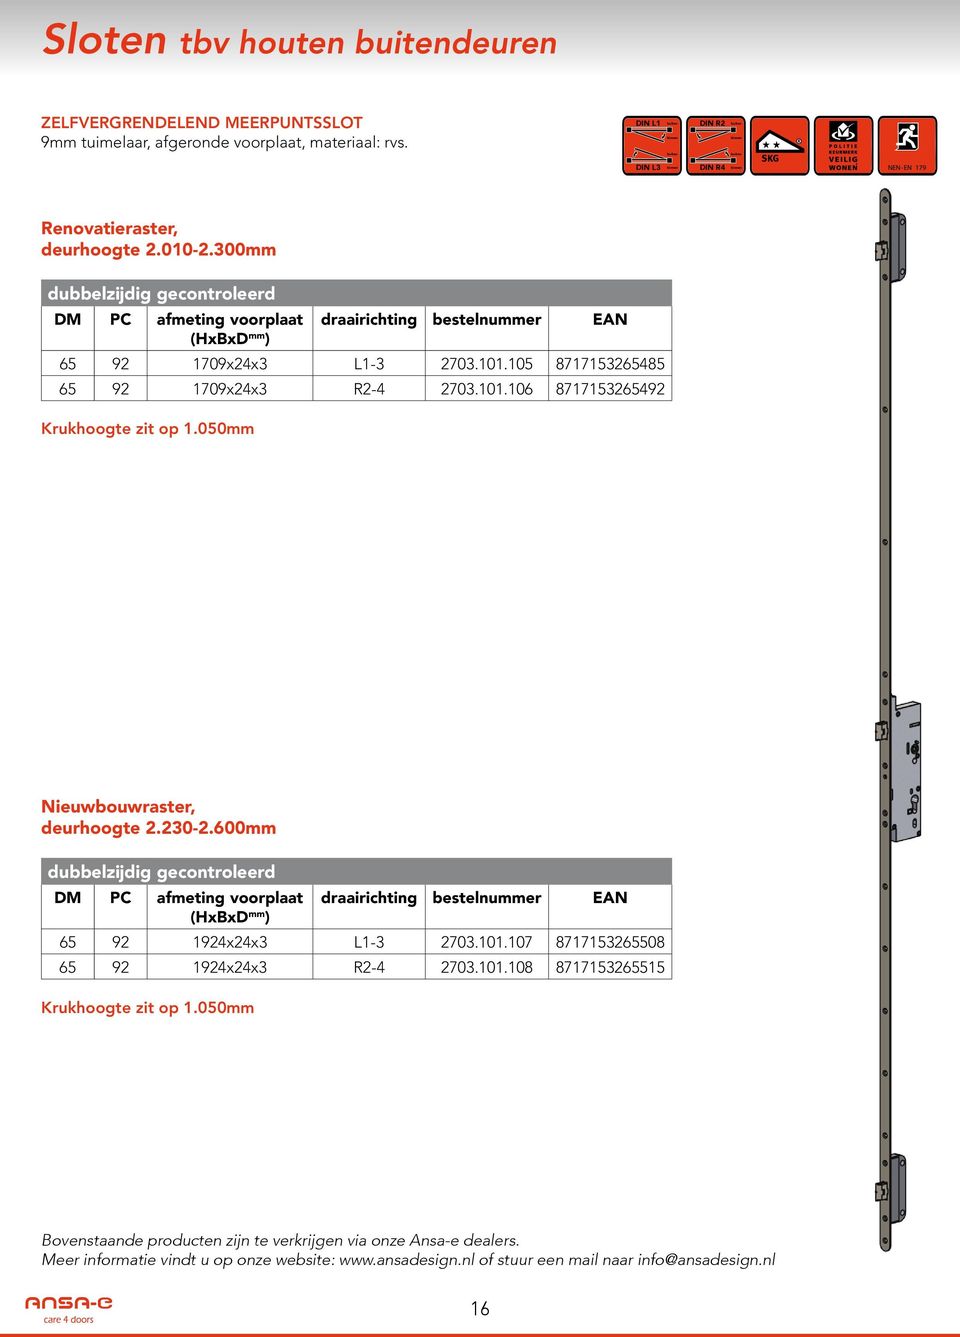 050mm Nieuwbouwraster, deurhoogte 2.2302.600mm dubbelzijdig gecontroleerd DM afmeting voorplaat draairichting bestelnummer EAN (HxBxD mm ) 65 92 1924x24x3 L13 2703.101.